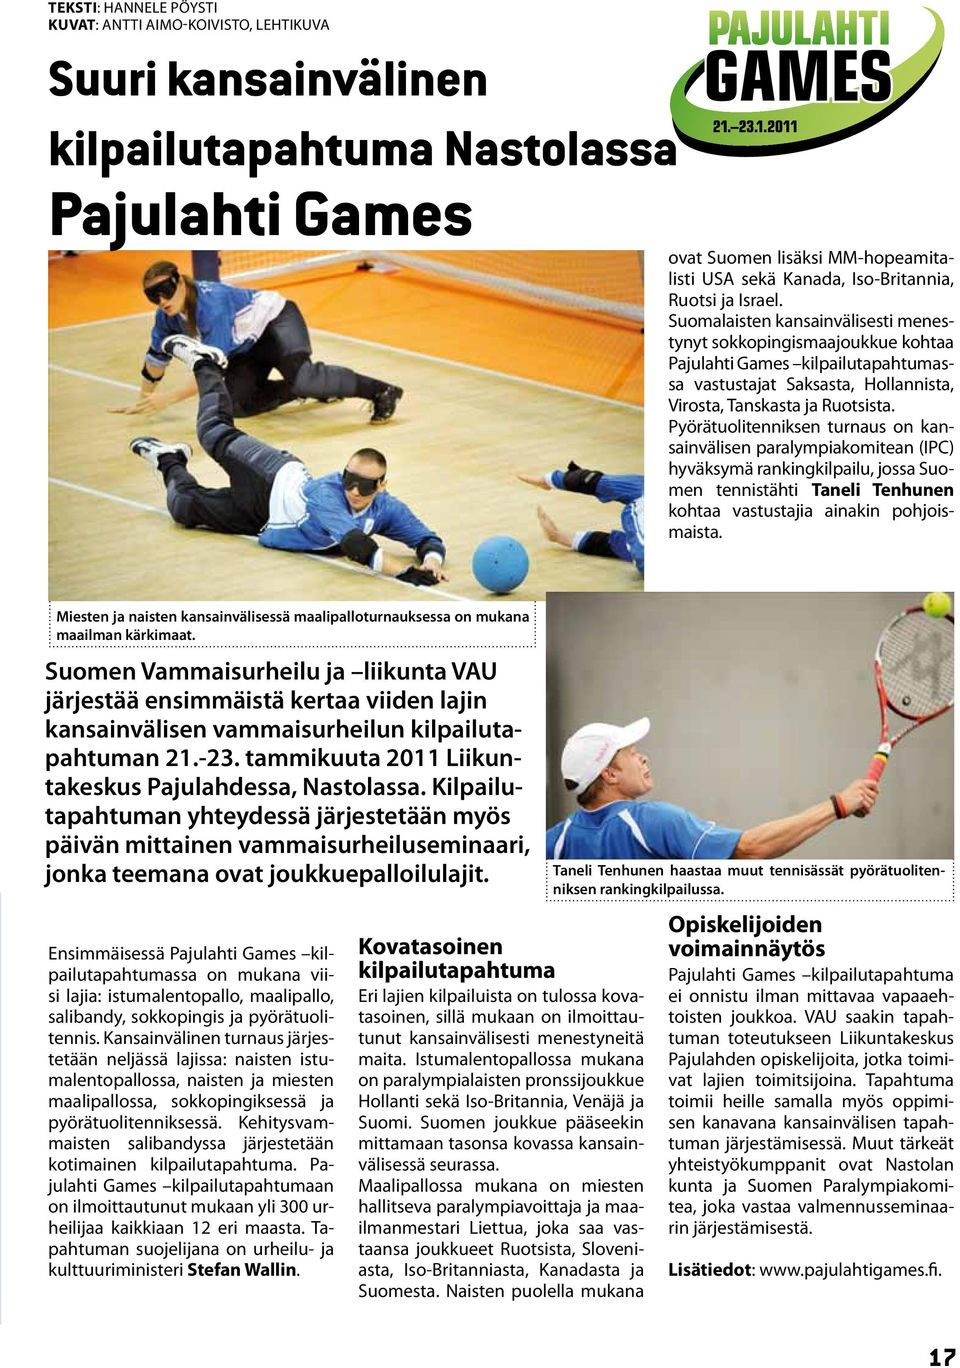 Pyörätuolitenniksen turnaus on kansainvälisen paralympiakomitean (IPC) hyväksymä rankingkilpailu, jossa Suomen tennistähti Taneli Tenhunen kohtaa vastustajia ainakin pohjoismaista.